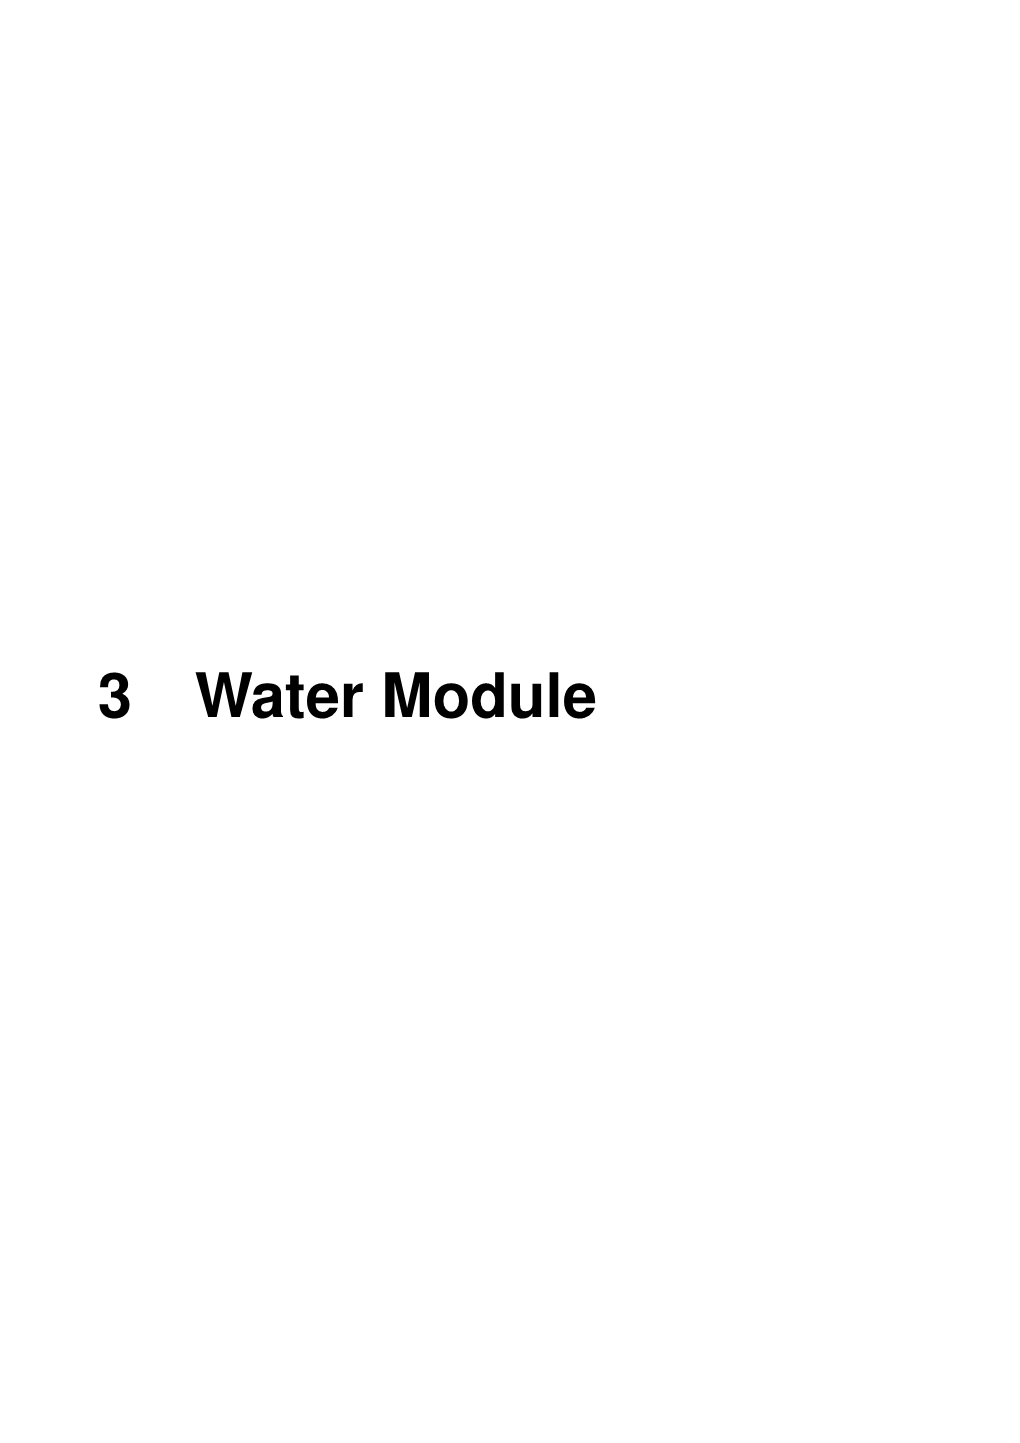 Water Module